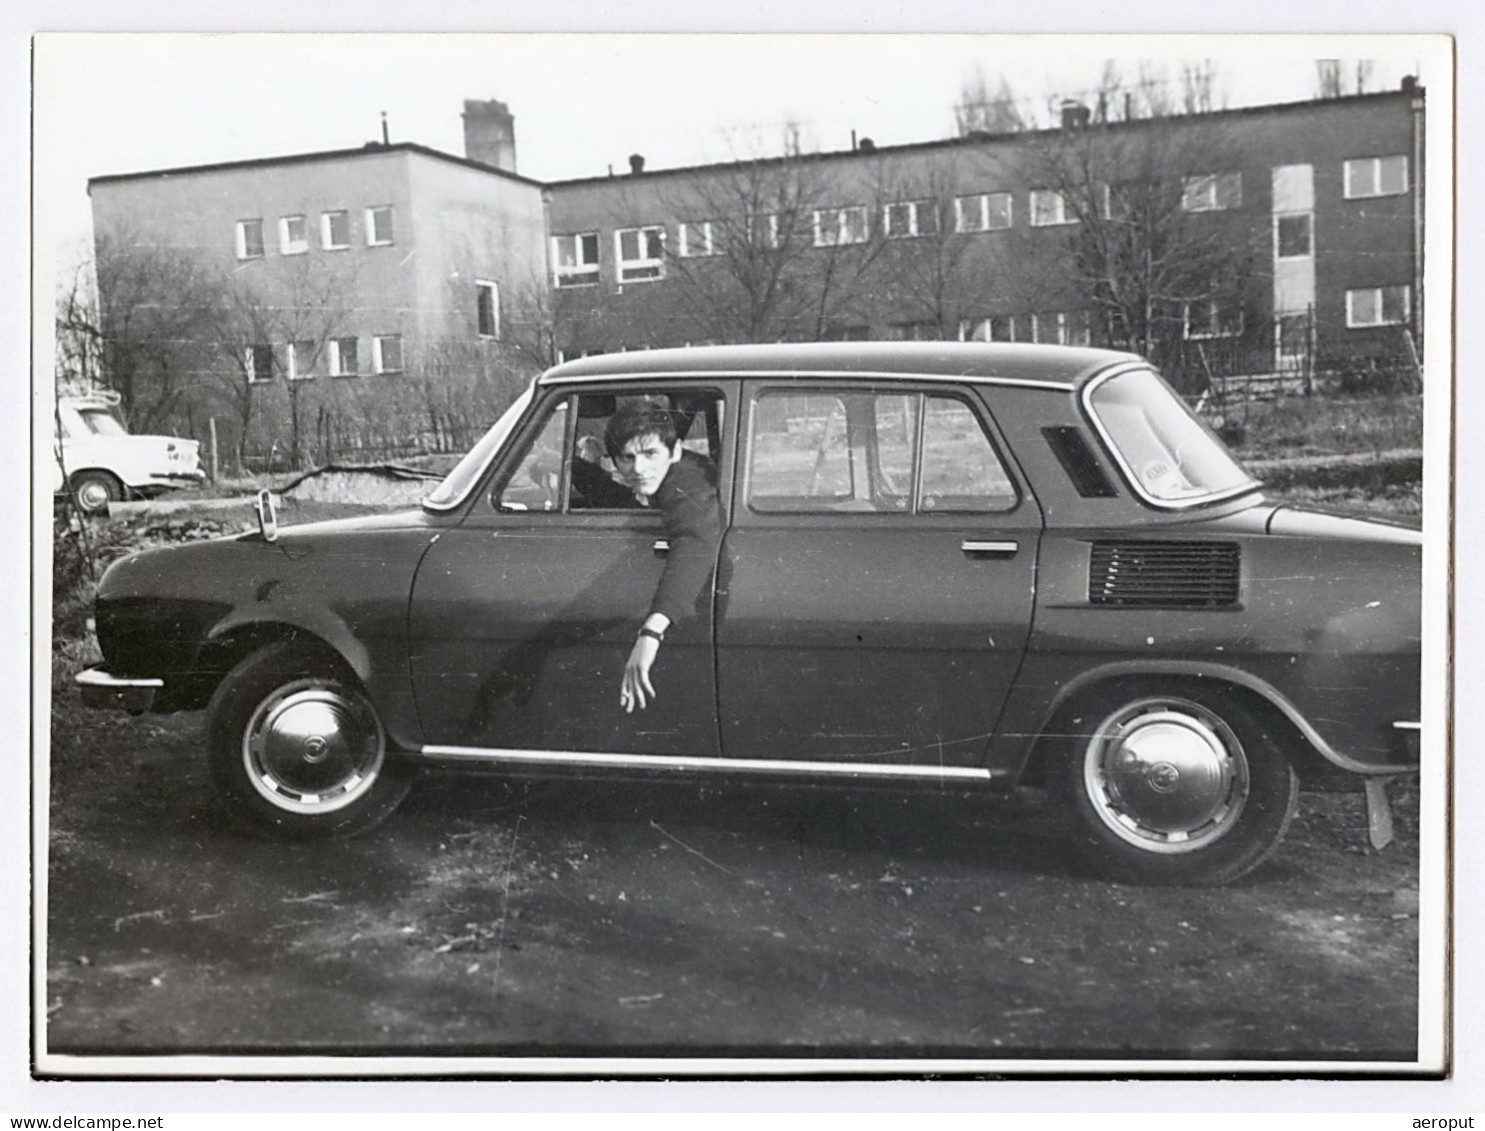 Photo Ancienne, Voiture Skoda 110, Jeune Homme Conducteur Posant Avec Une Cigarette à La Main, Années 1970 - Auto's